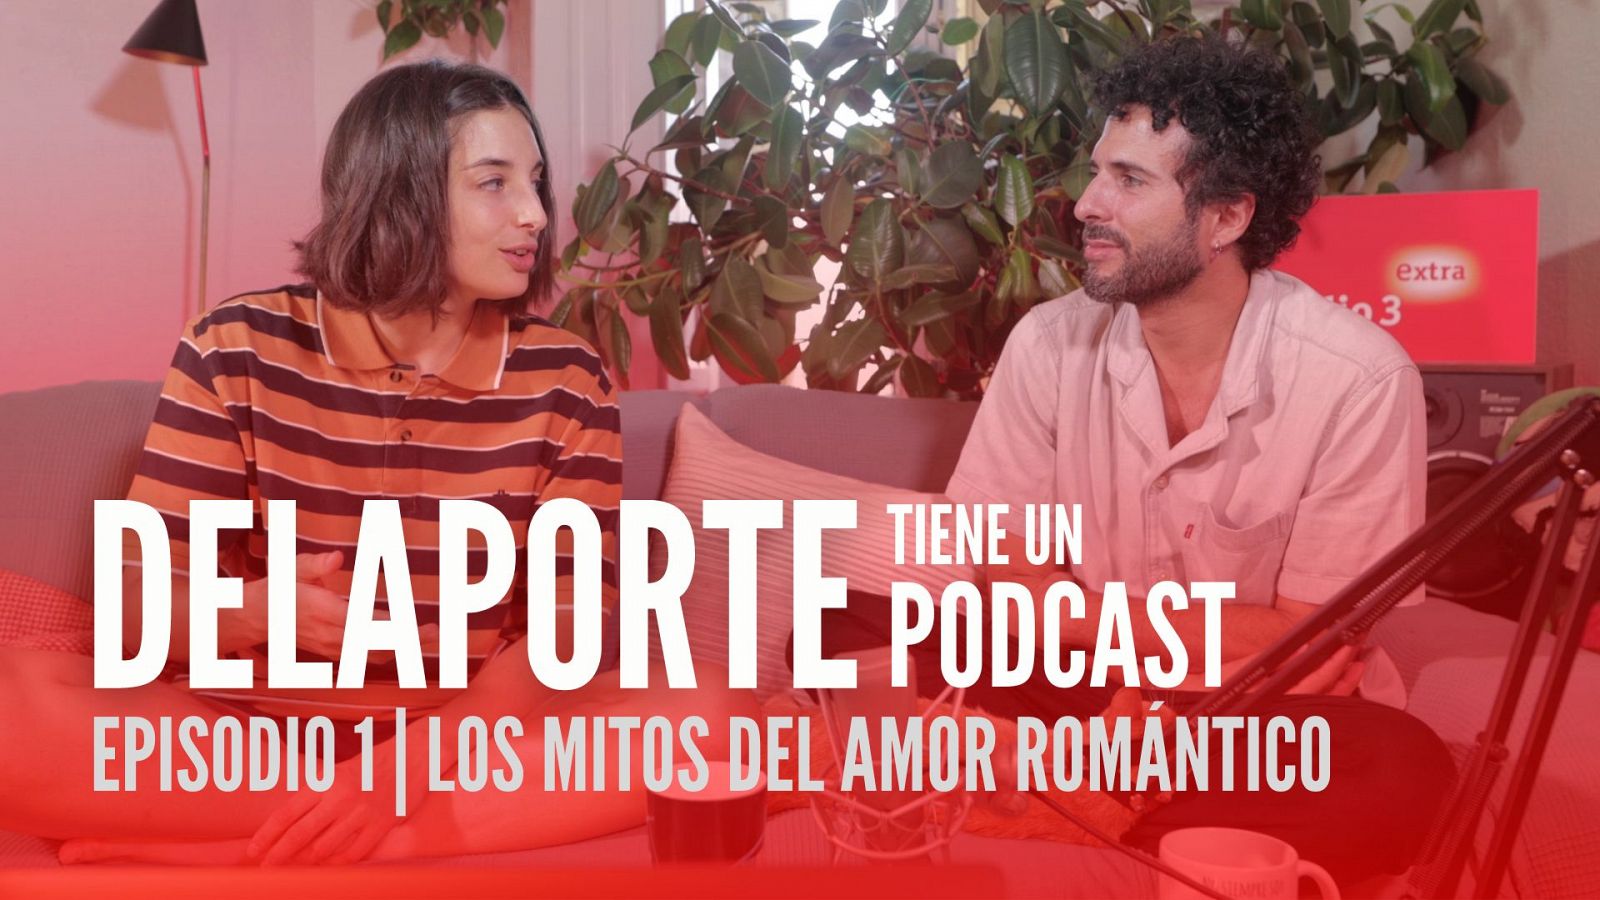 DELAPORTE tiene un podcast - Episodio 1: los mitos del amor romántico - 15/09/22 - Ver ahora